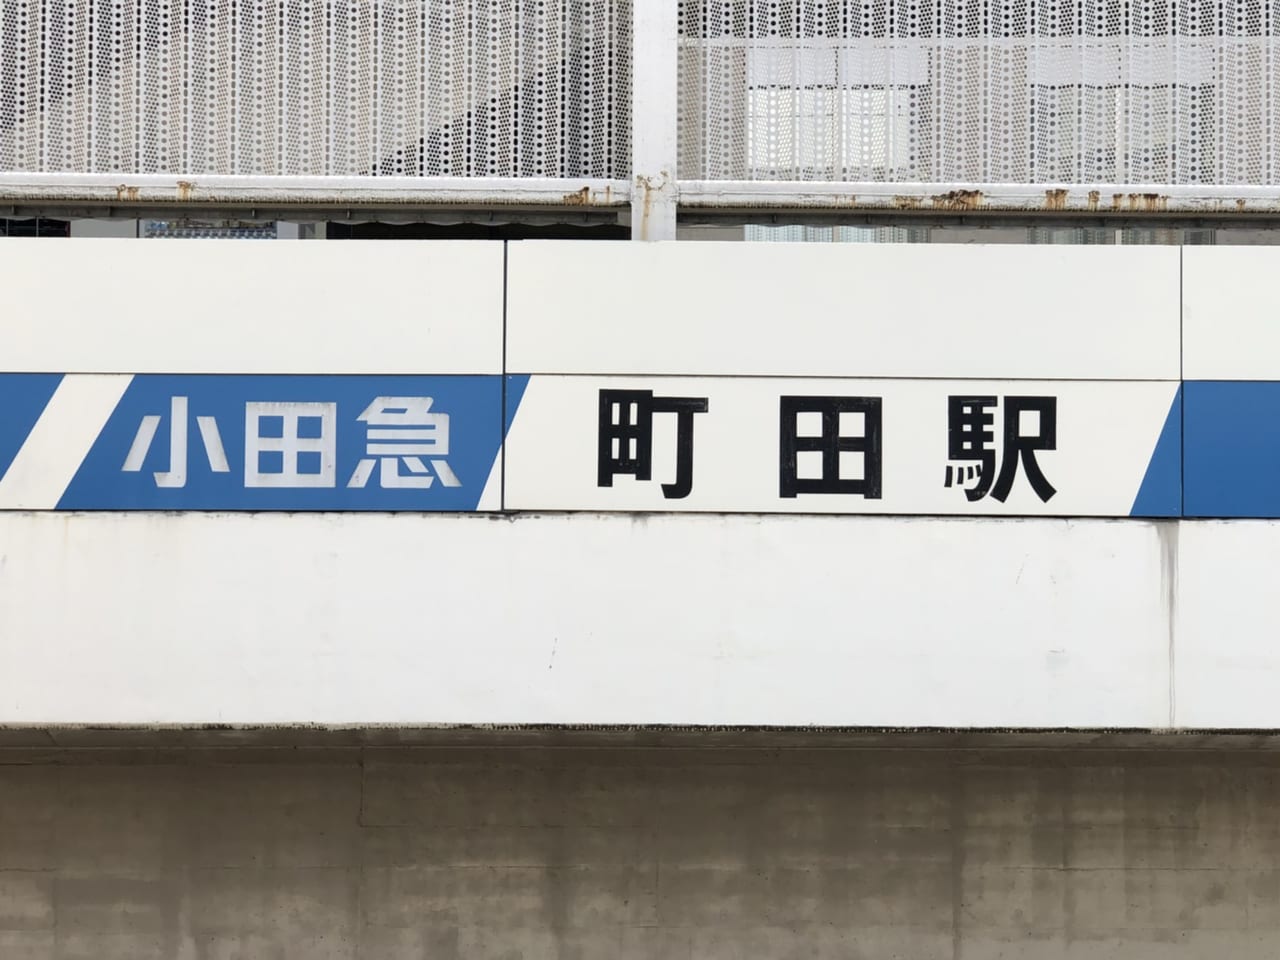 小田急線町田駅